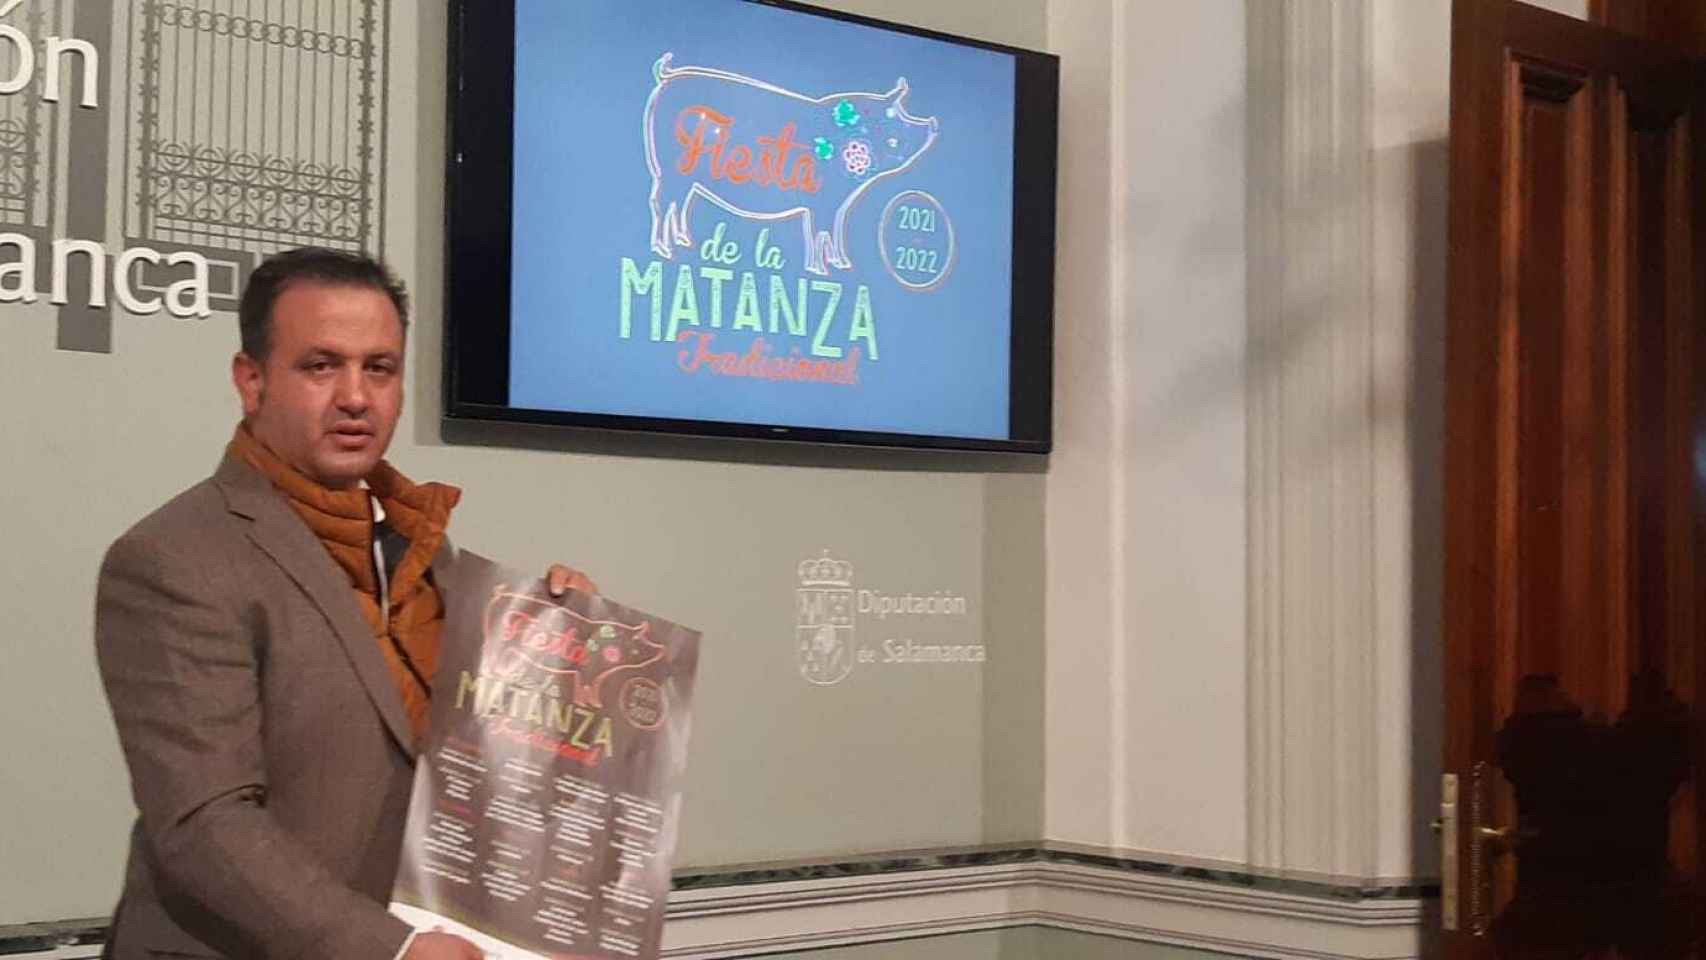 El diputado provincial de Turismo de Salamanca, Francisco Javier García Hidalgo, presenta las fiestas de la matanza tradicional